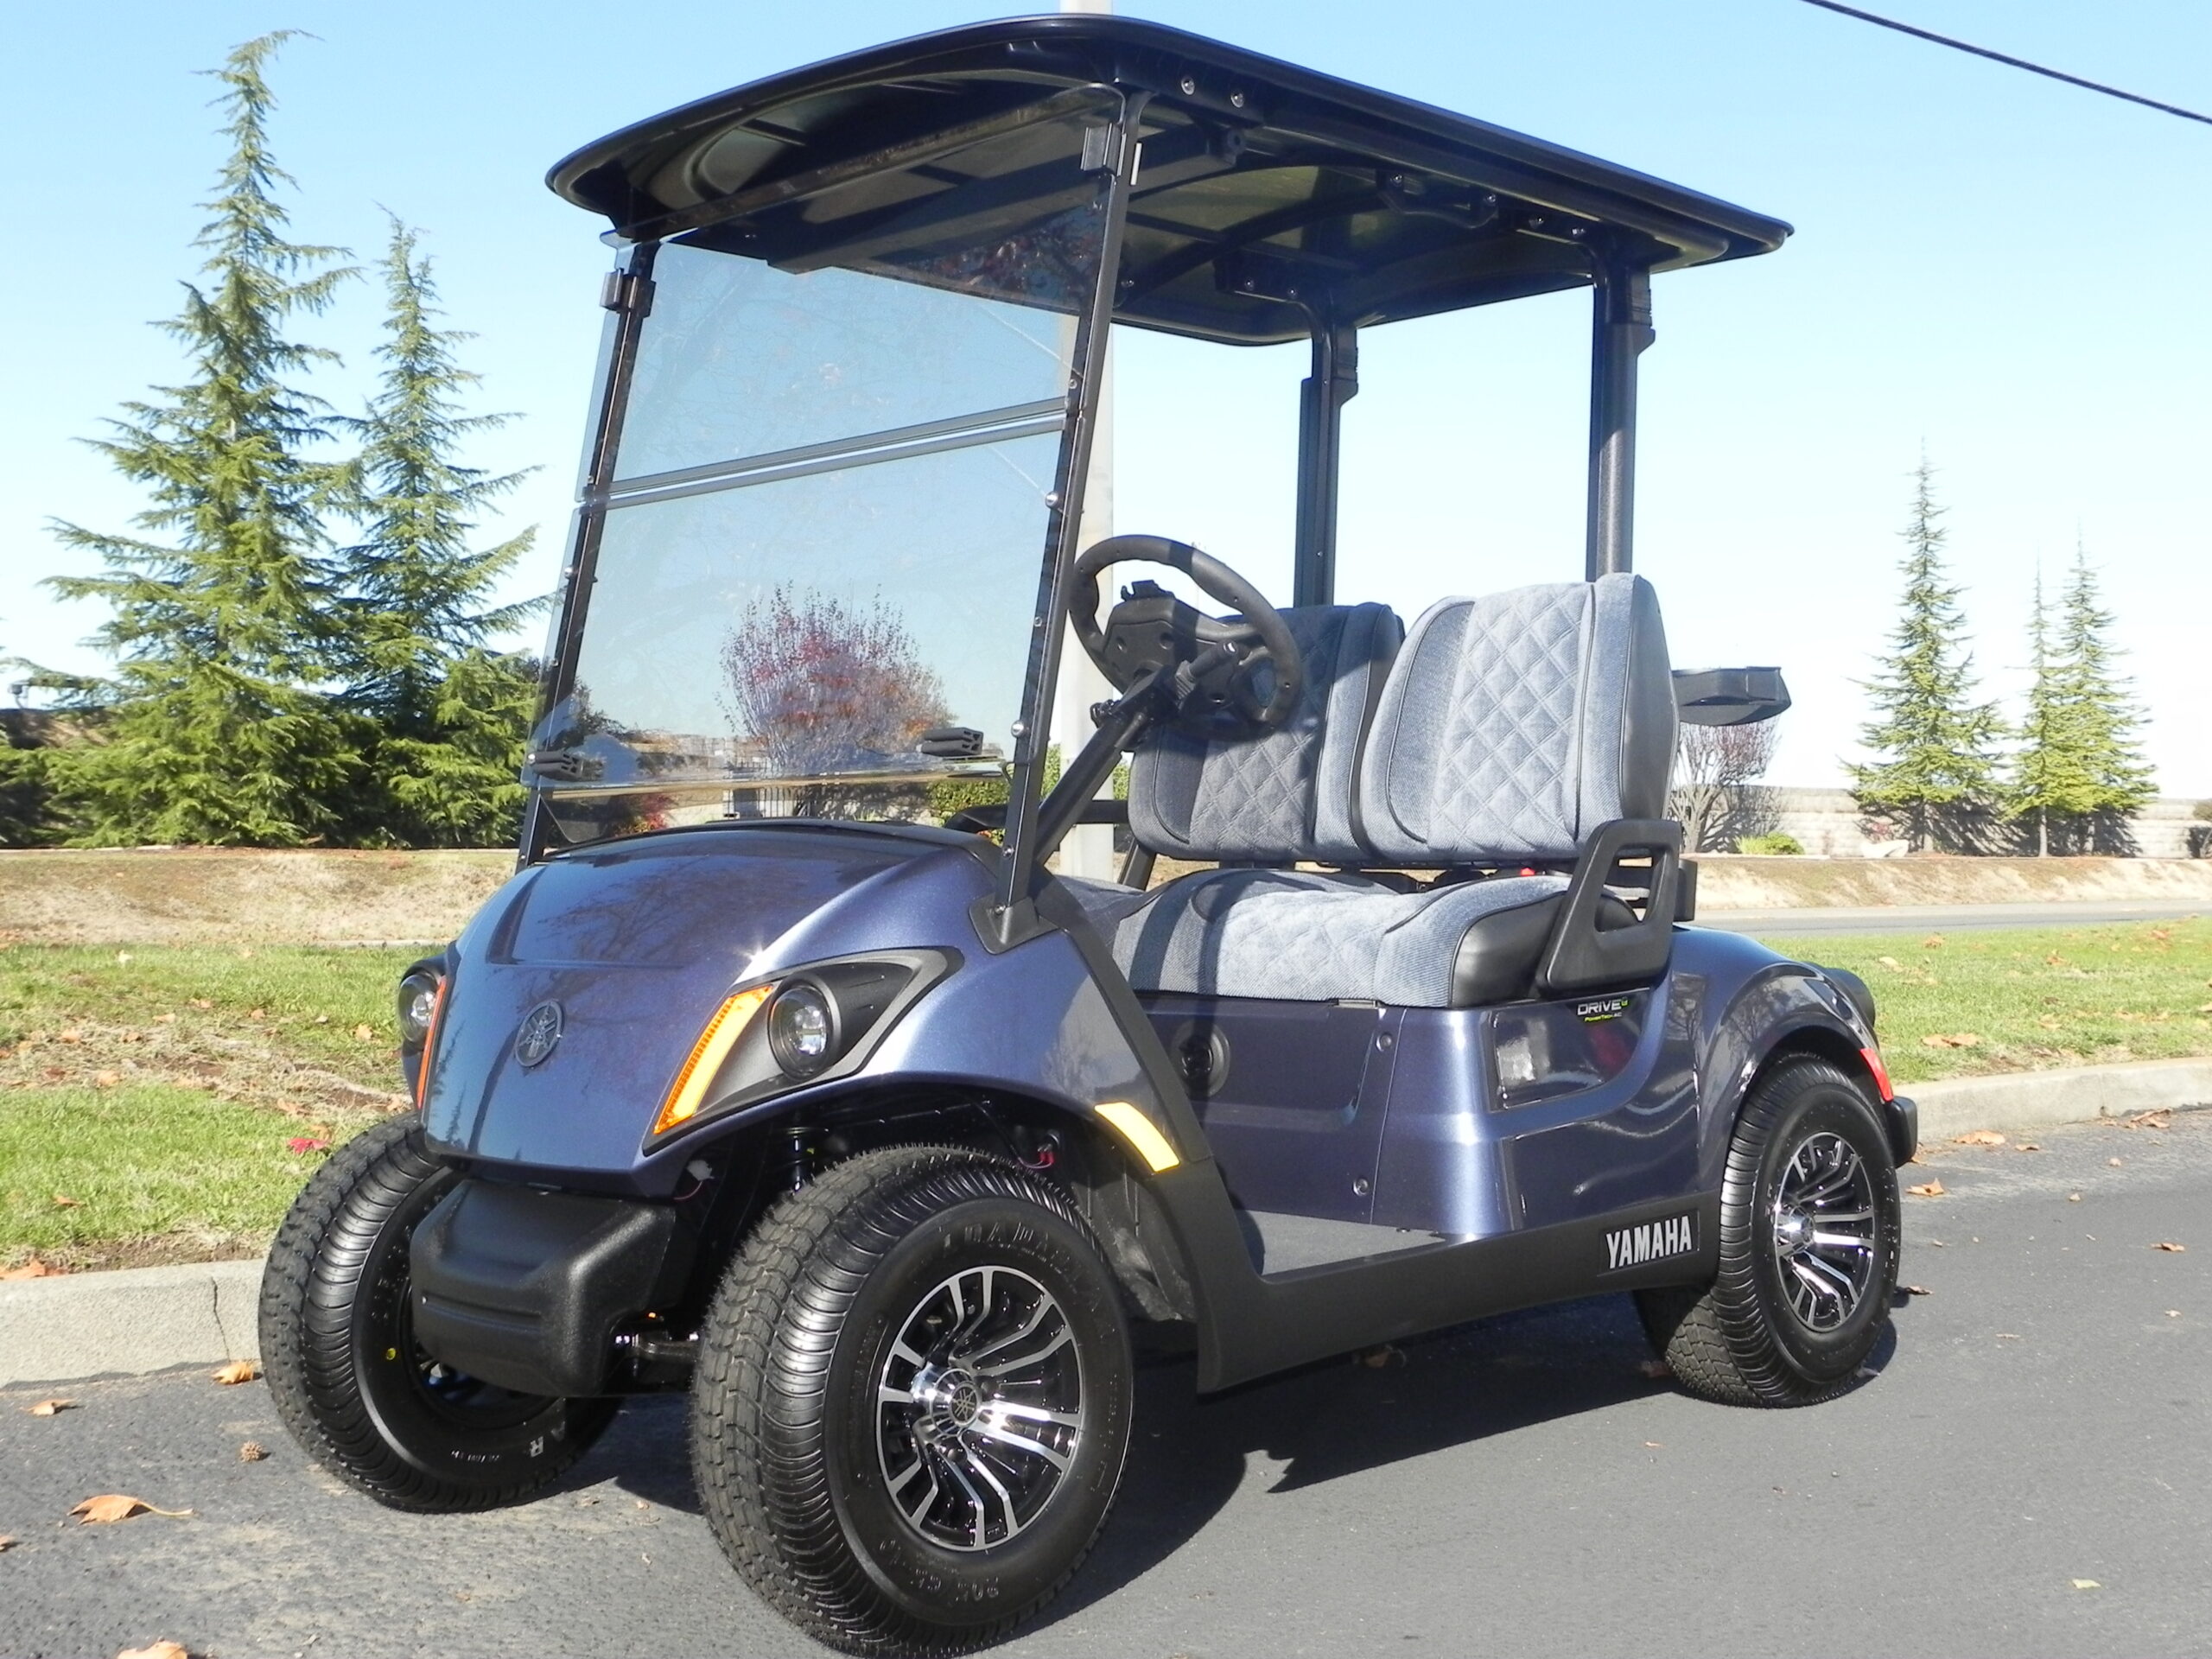 golf-cart